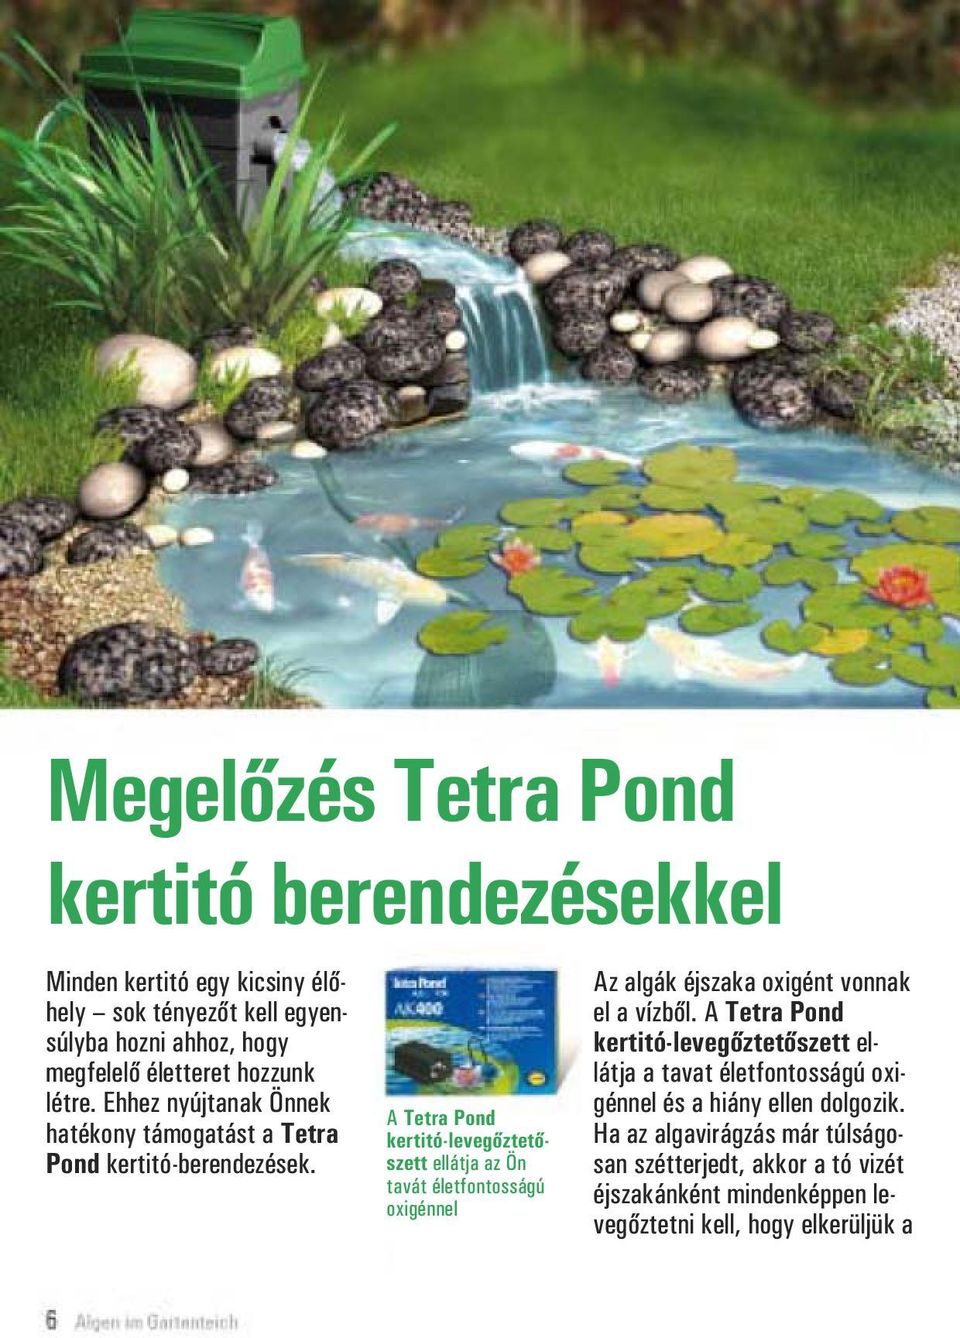 A Tetra Pond kertitó-levegőztetőszett ellátja az Ön tavát életfontosságú oxigénnel Az algák éjszaka oxigént vonnak el a vízből.